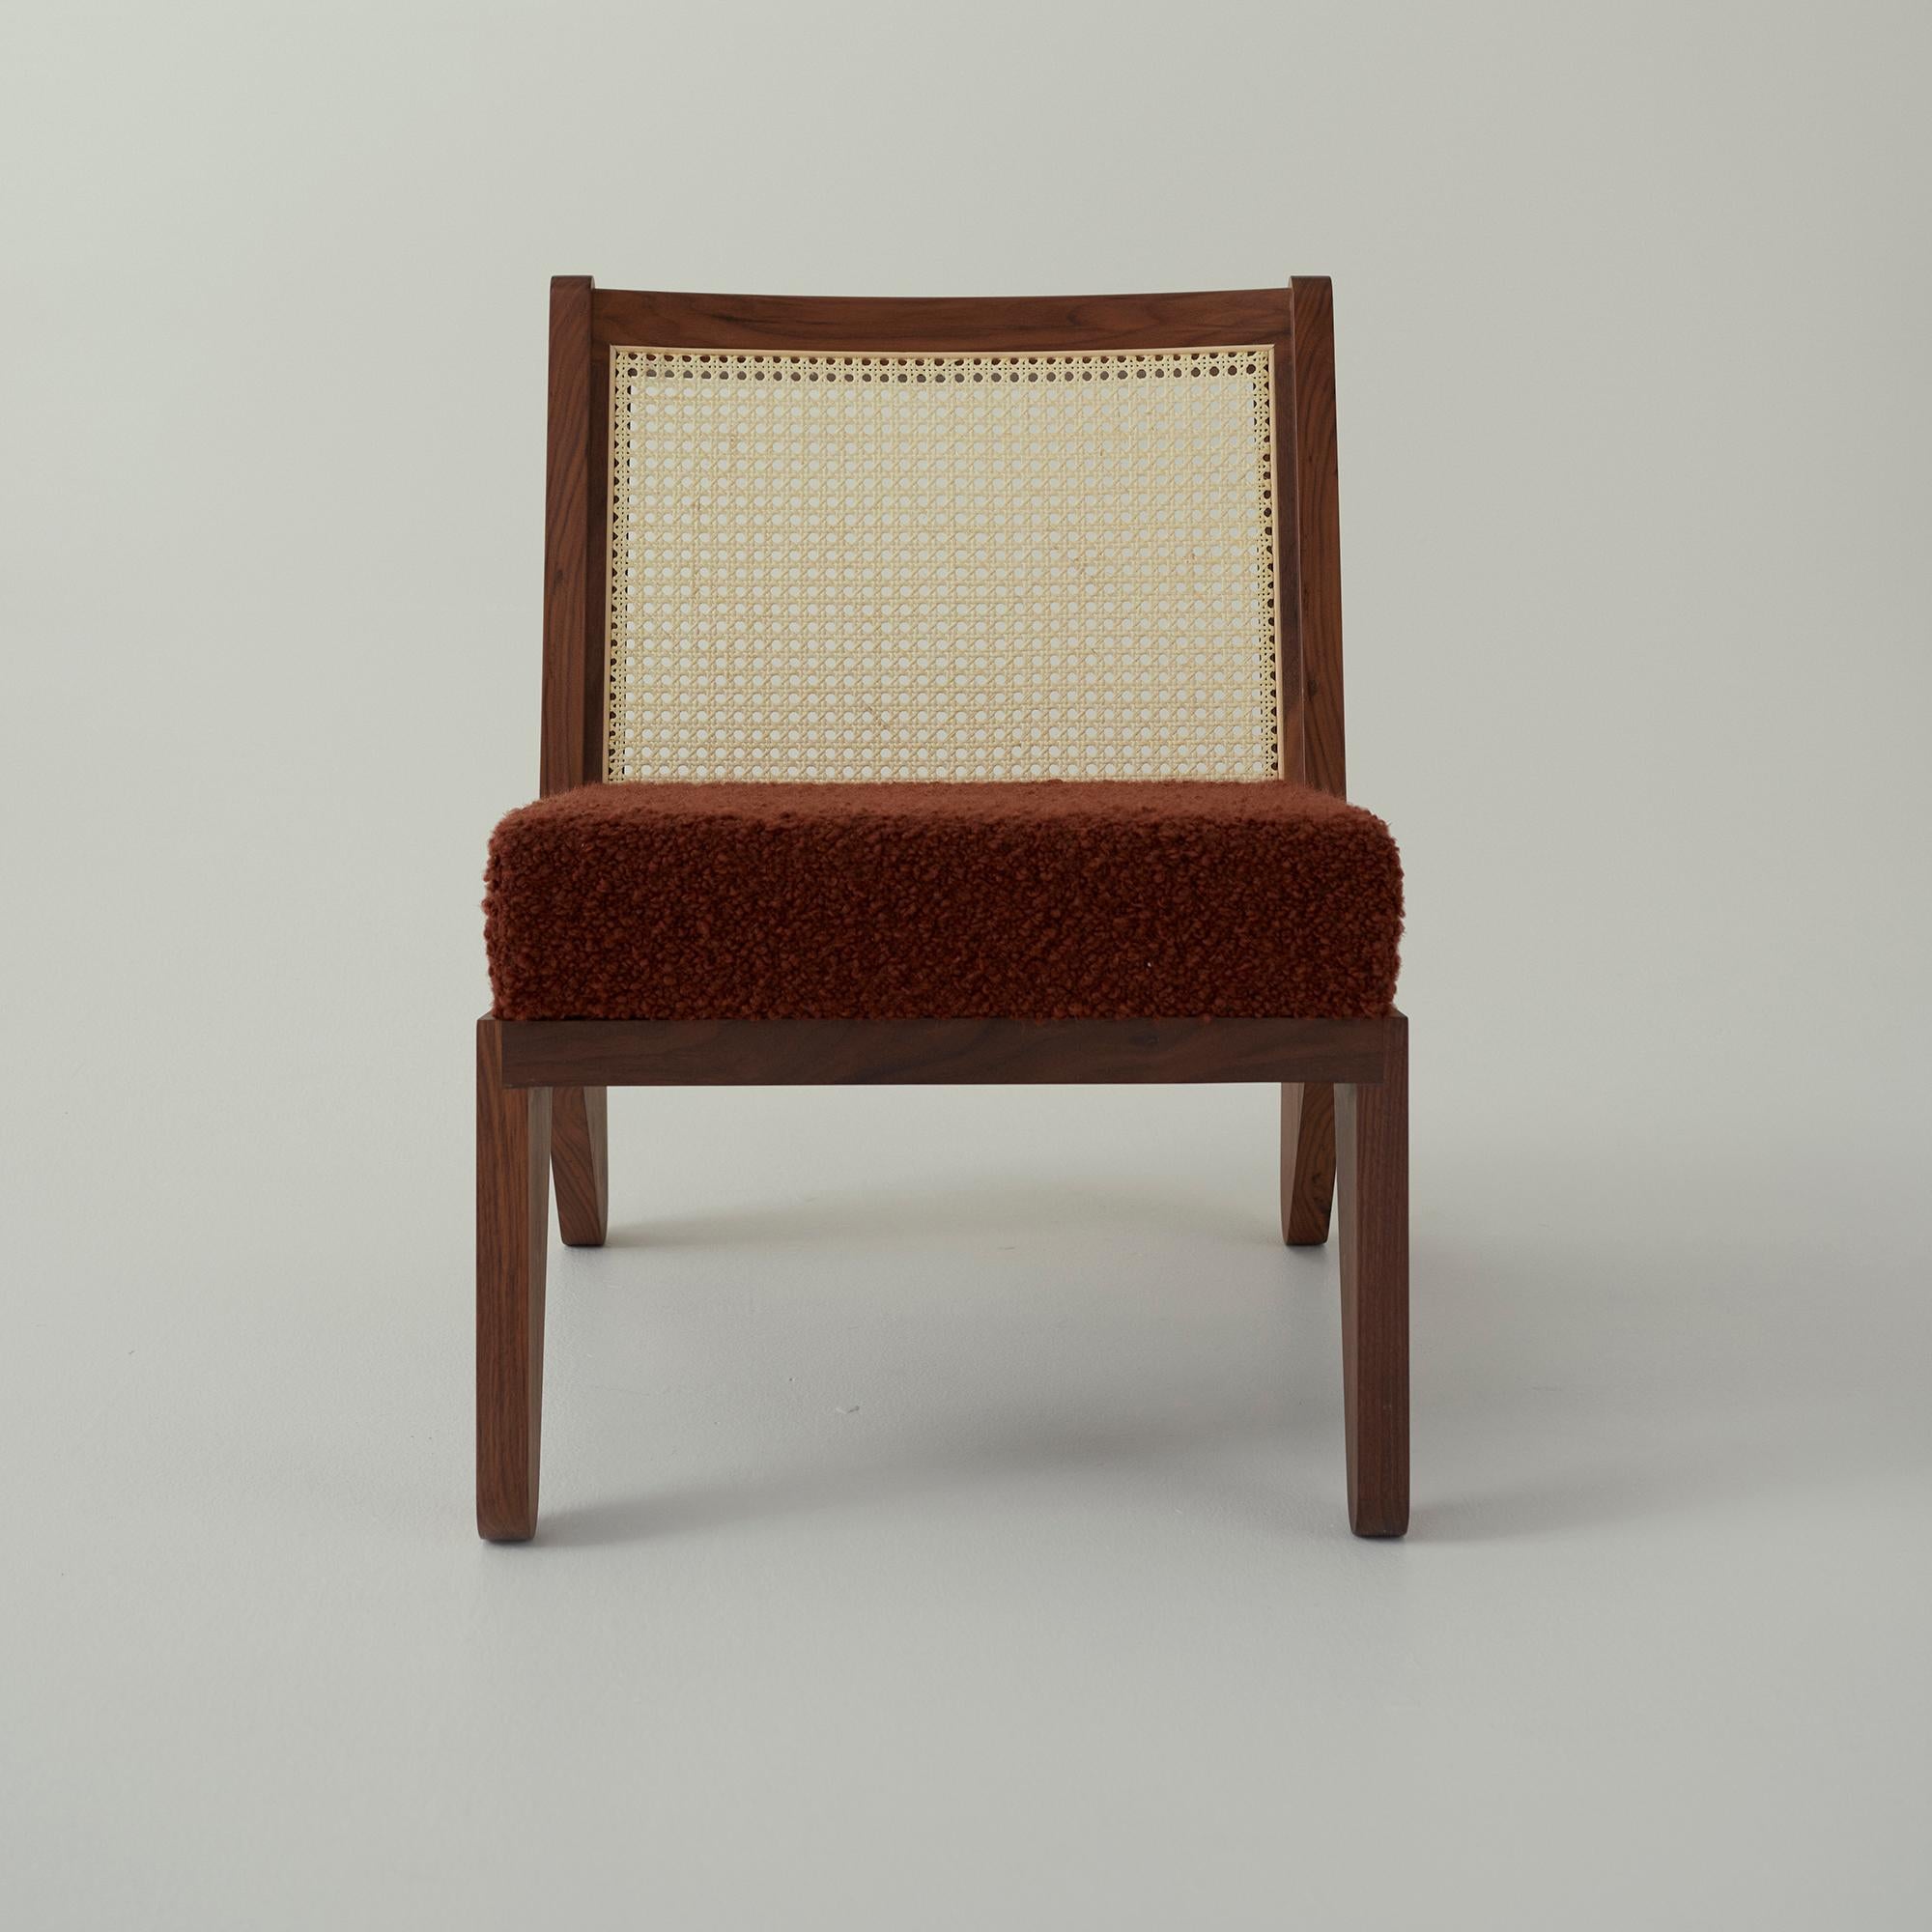 Der Stuhl booham von Daniel Boddam Studio vereint zeitgenössische und
Modernistische Einflüsse überlagern sich mit Boddams typisch australischer Sensibilität.
Der Booham Chair steht in der großen Tradition von Charlotte Perriand und Pierre